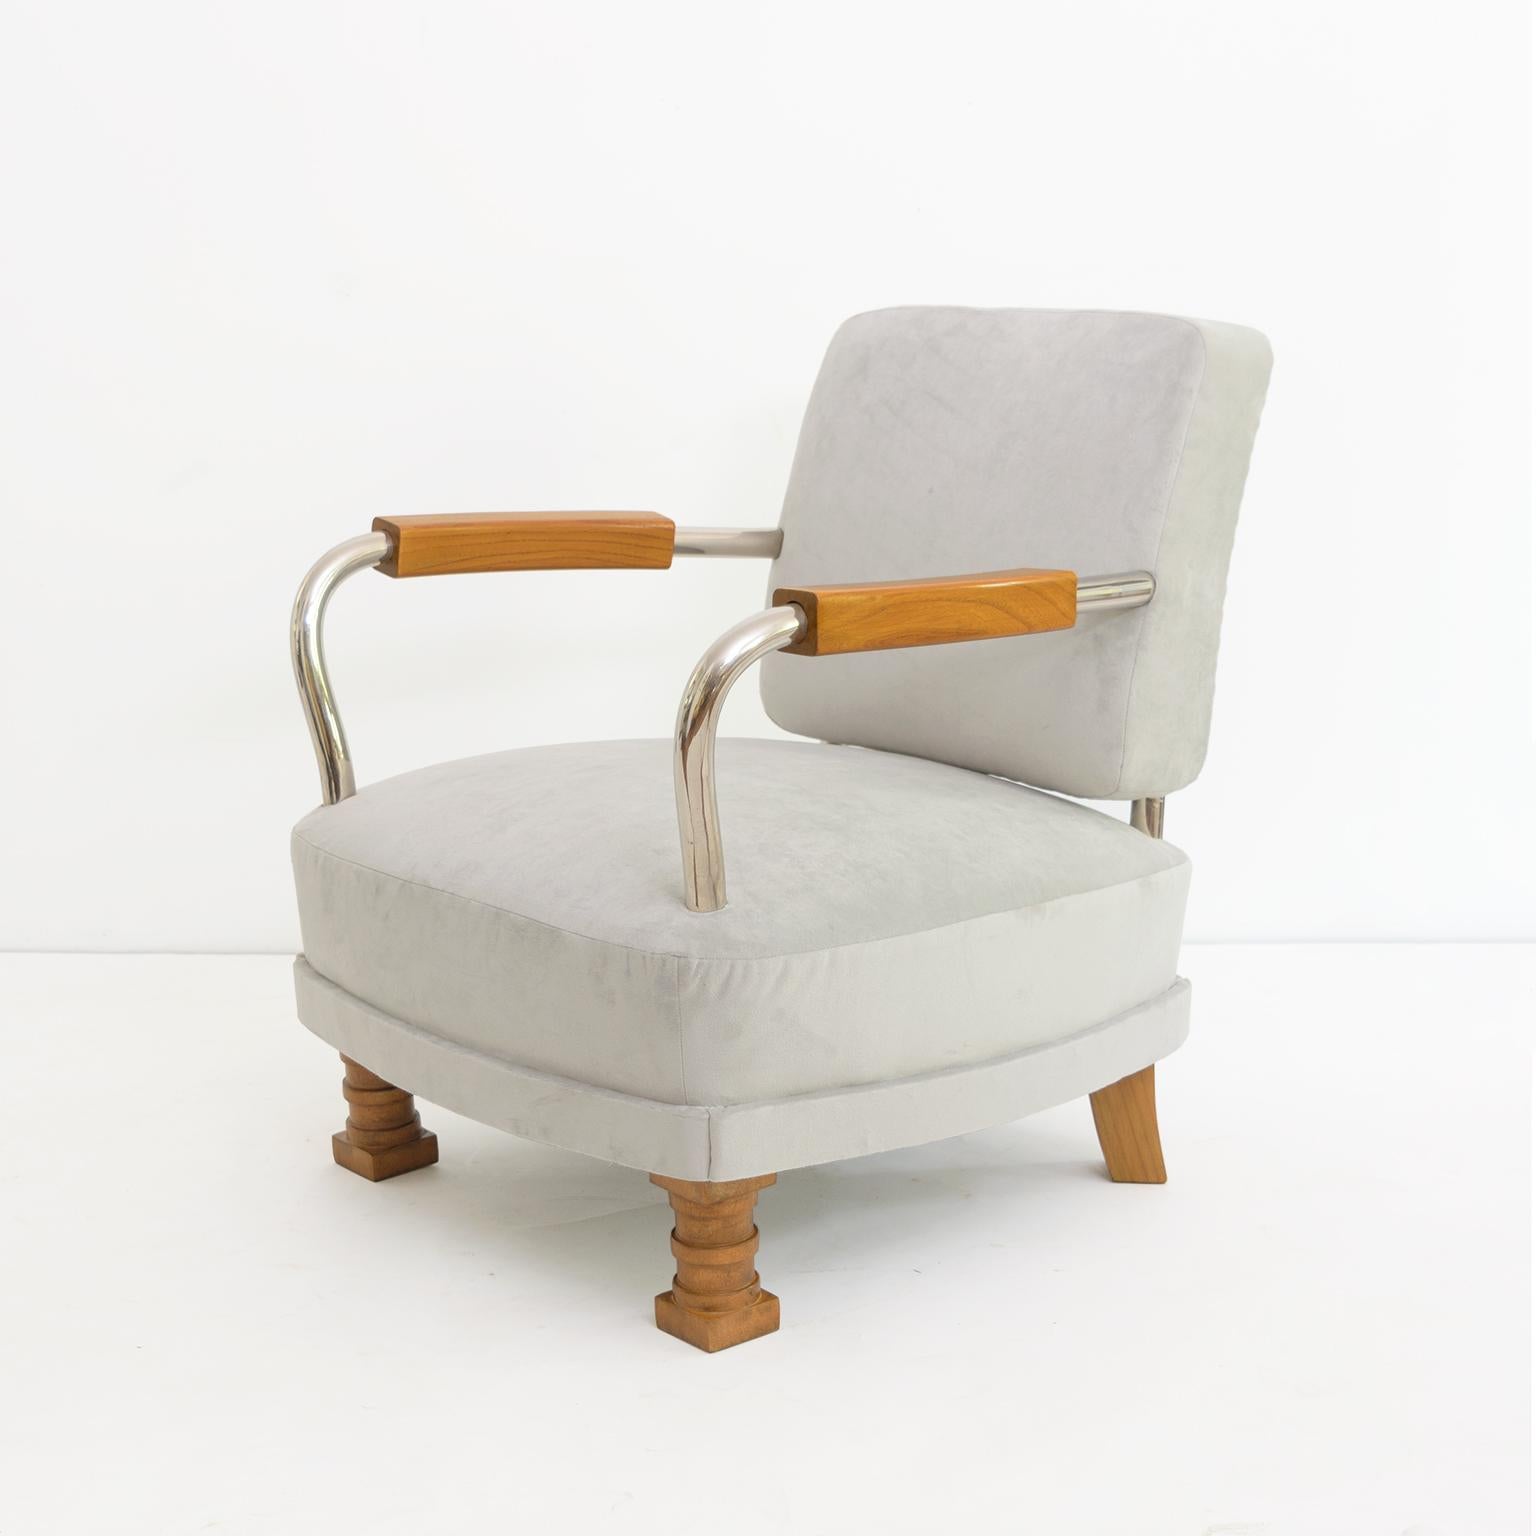 Paar skandinavisch-moderne Sessel mit Armlehnen und Füßen aus verchromtem Metall und massivem Ulmenholz. Diese modernistischen Stühle haben ein niedriges Profil und kombinieren Details aus dem Bauhaus-Design mit dem klassischen Art-Déco-Stil. Das